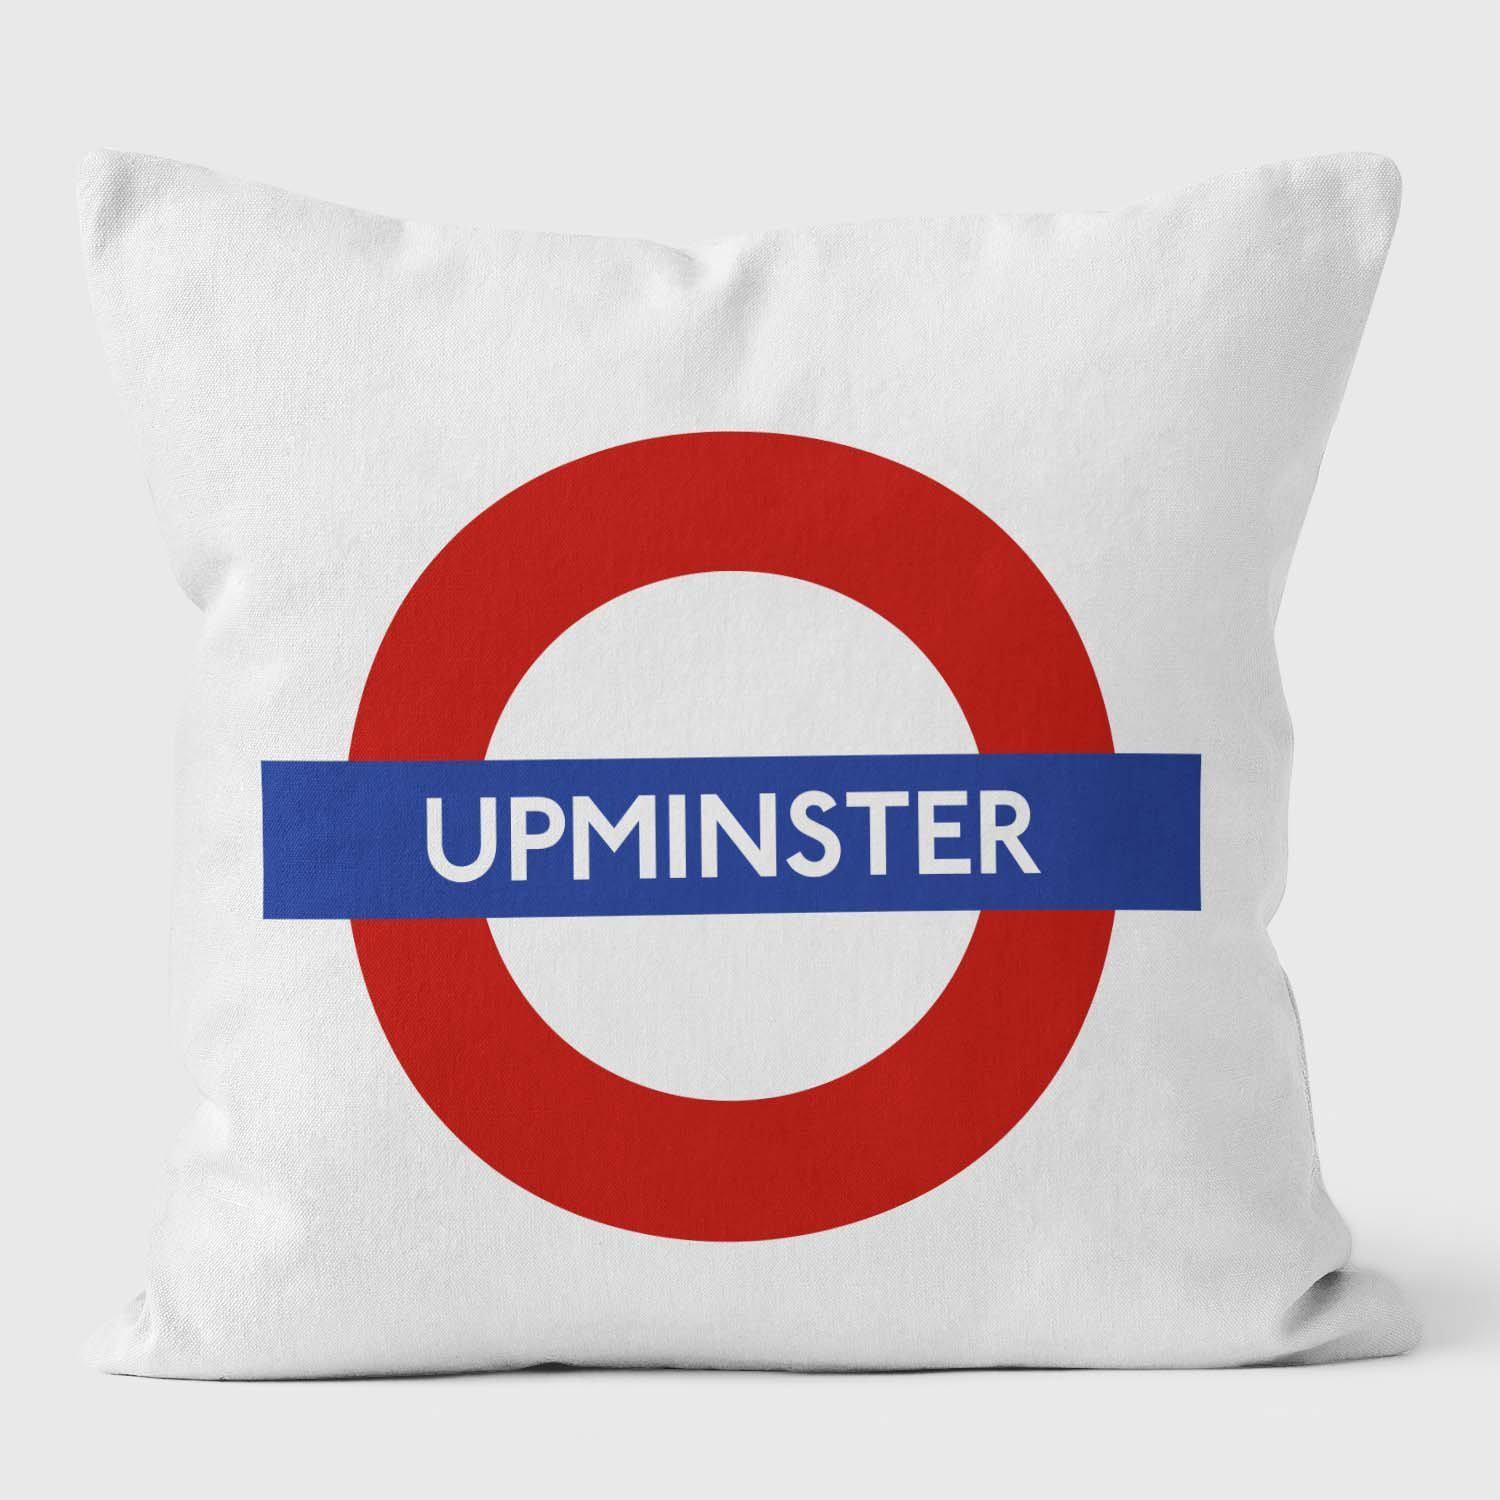 Upminster London Underground Tube Station Roundel Cushion - Handmade Cushions UK - WeLoveCushions